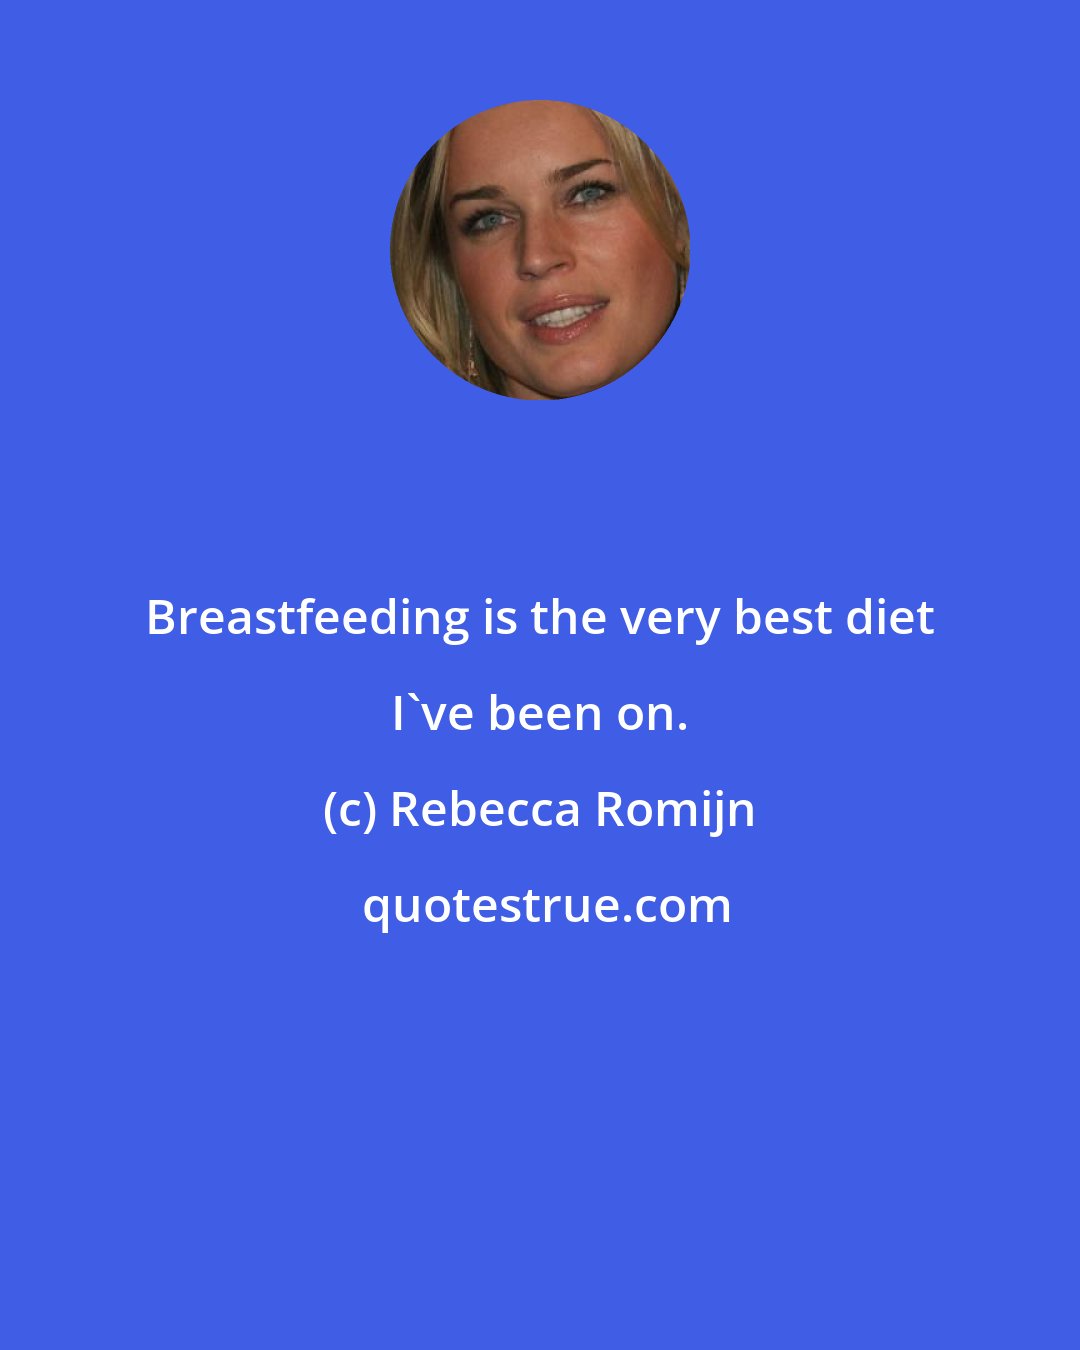 Rebecca Romijn: Breastfeeding is the very best diet I've been on.